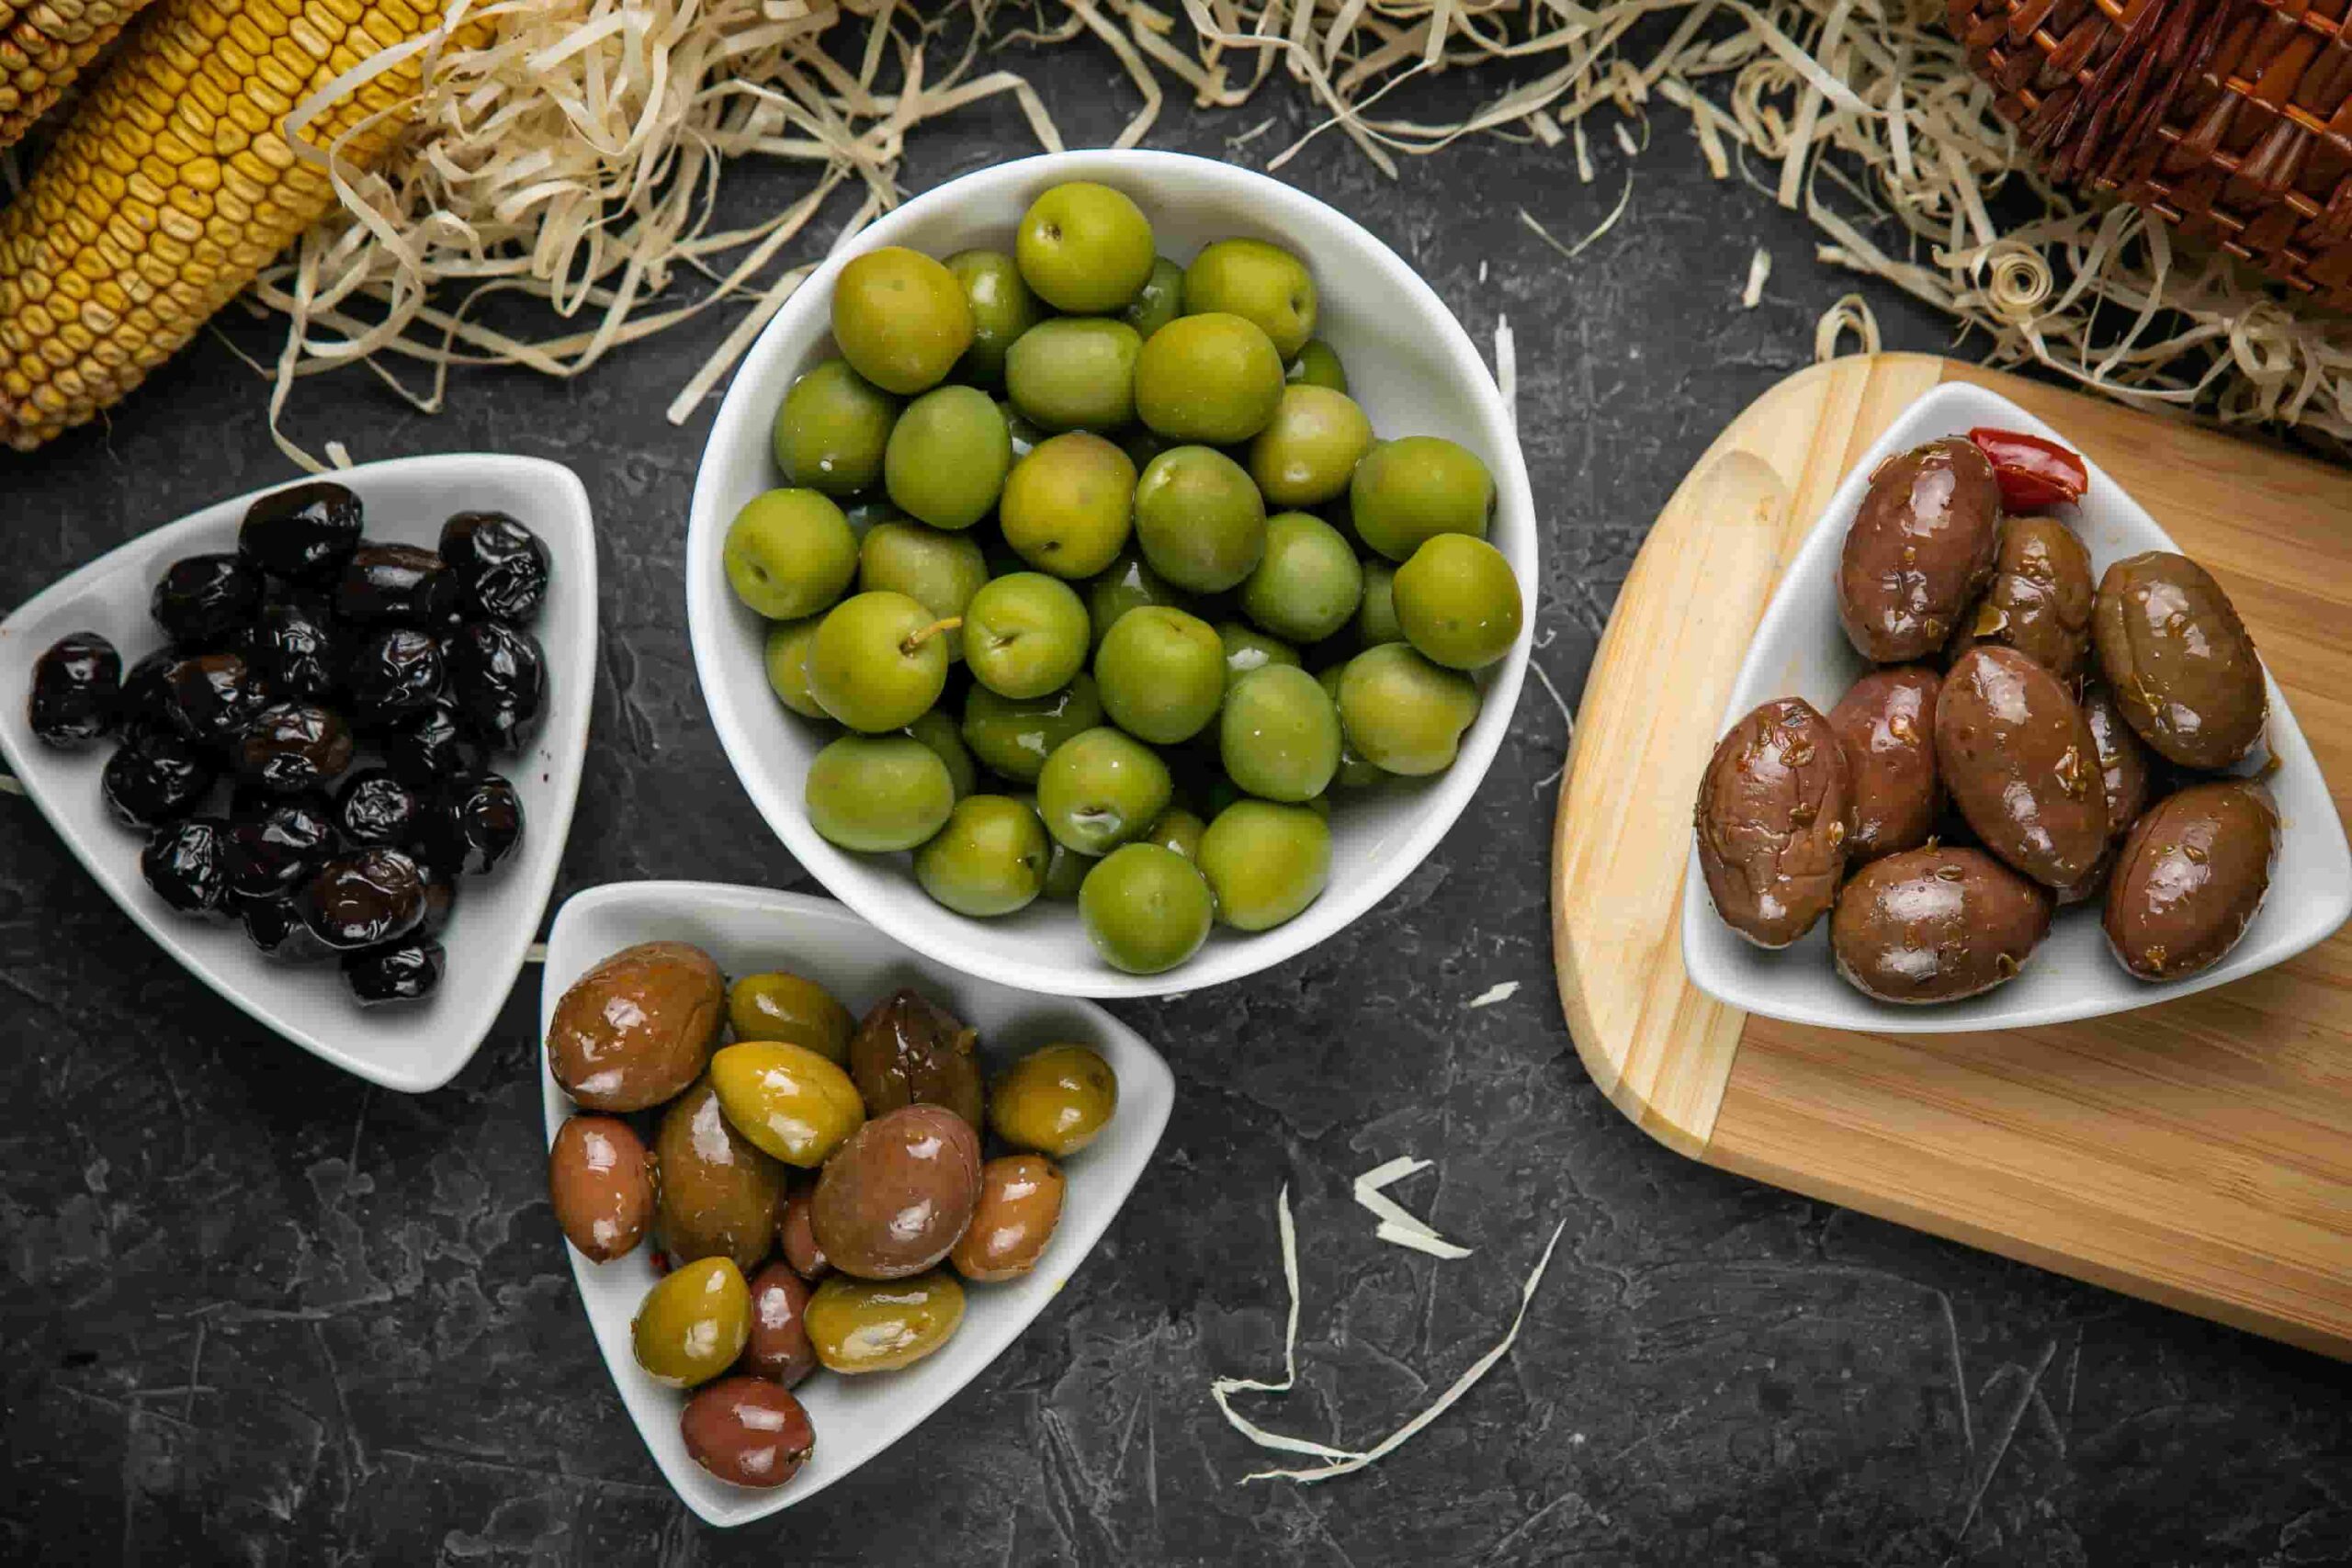 Key Principles of the Mediterranean Diet